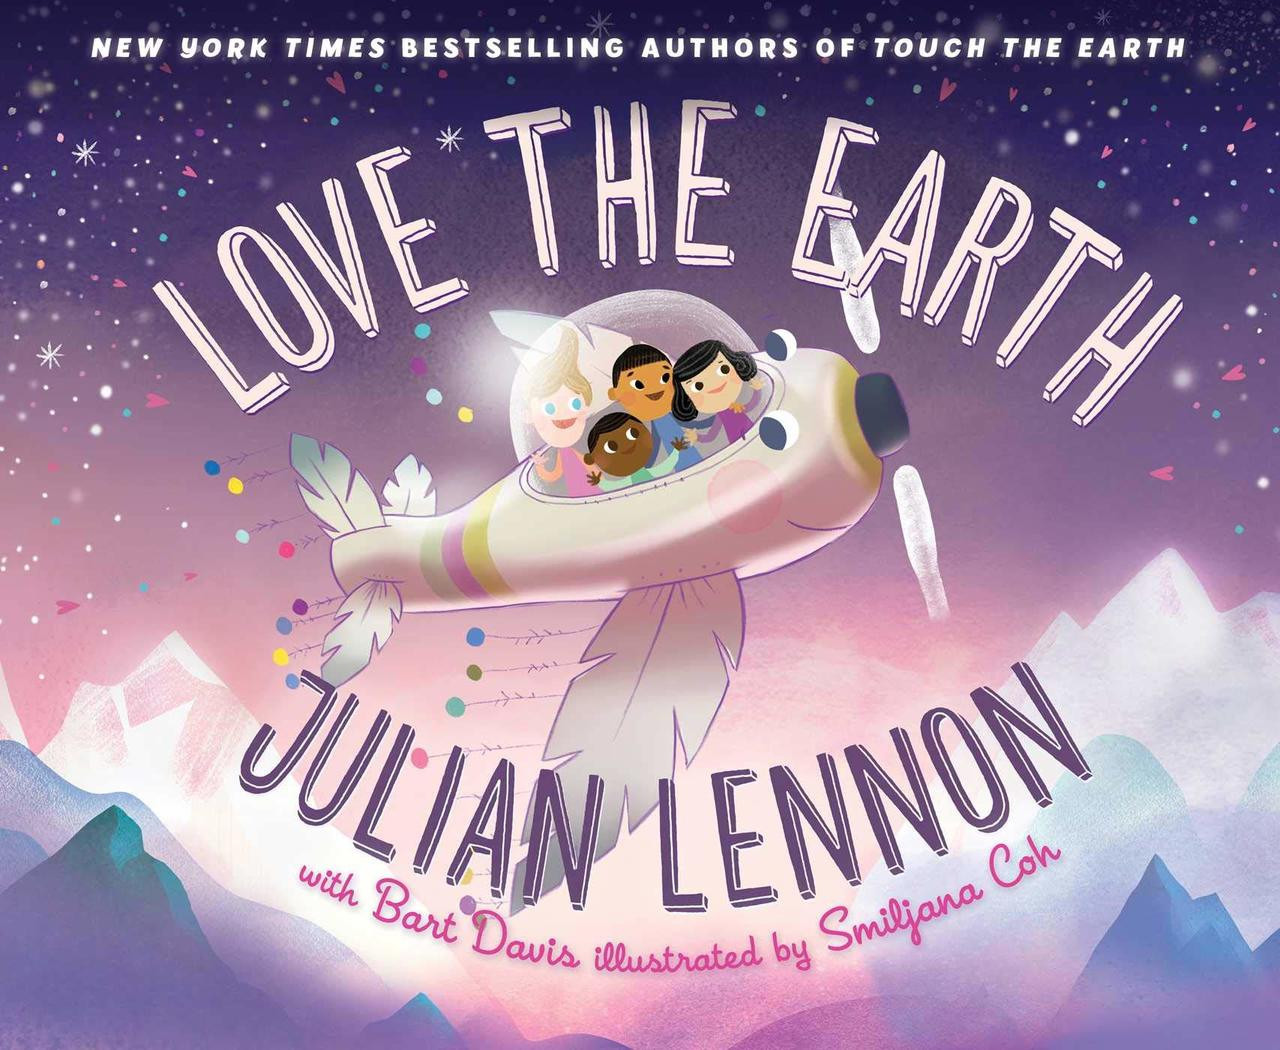 Love the Earth by Julian Lennon